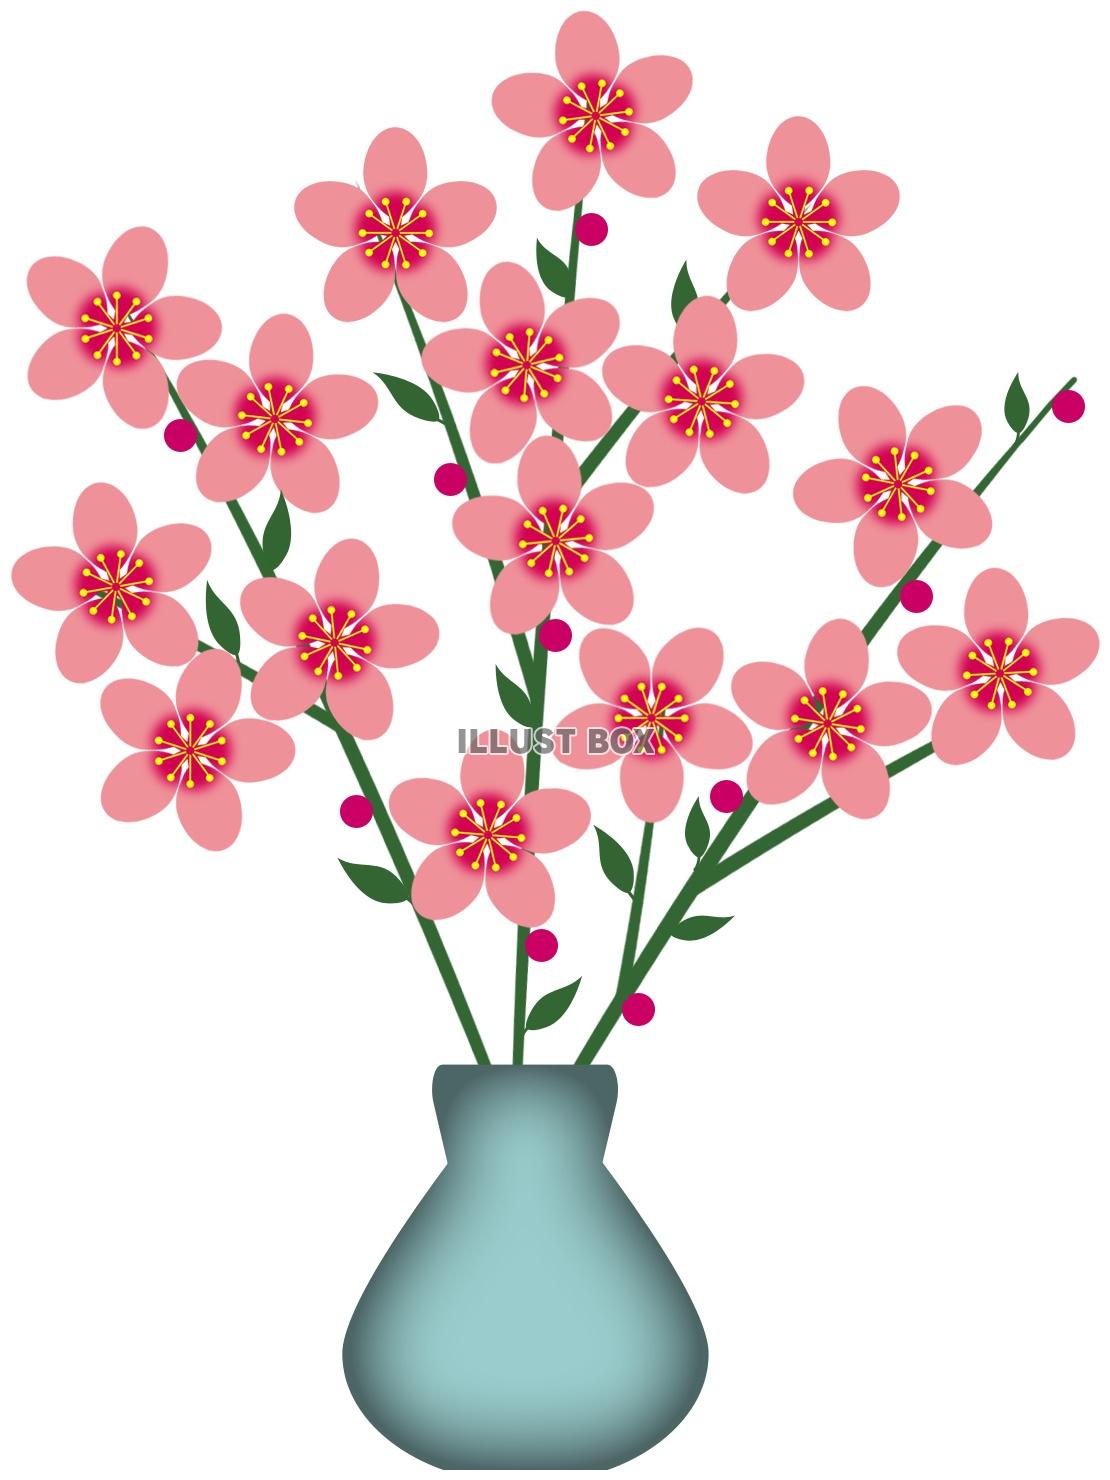 無料イラスト 桃の花模様壁紙シンプル背景素材イラスト ベクターもあります